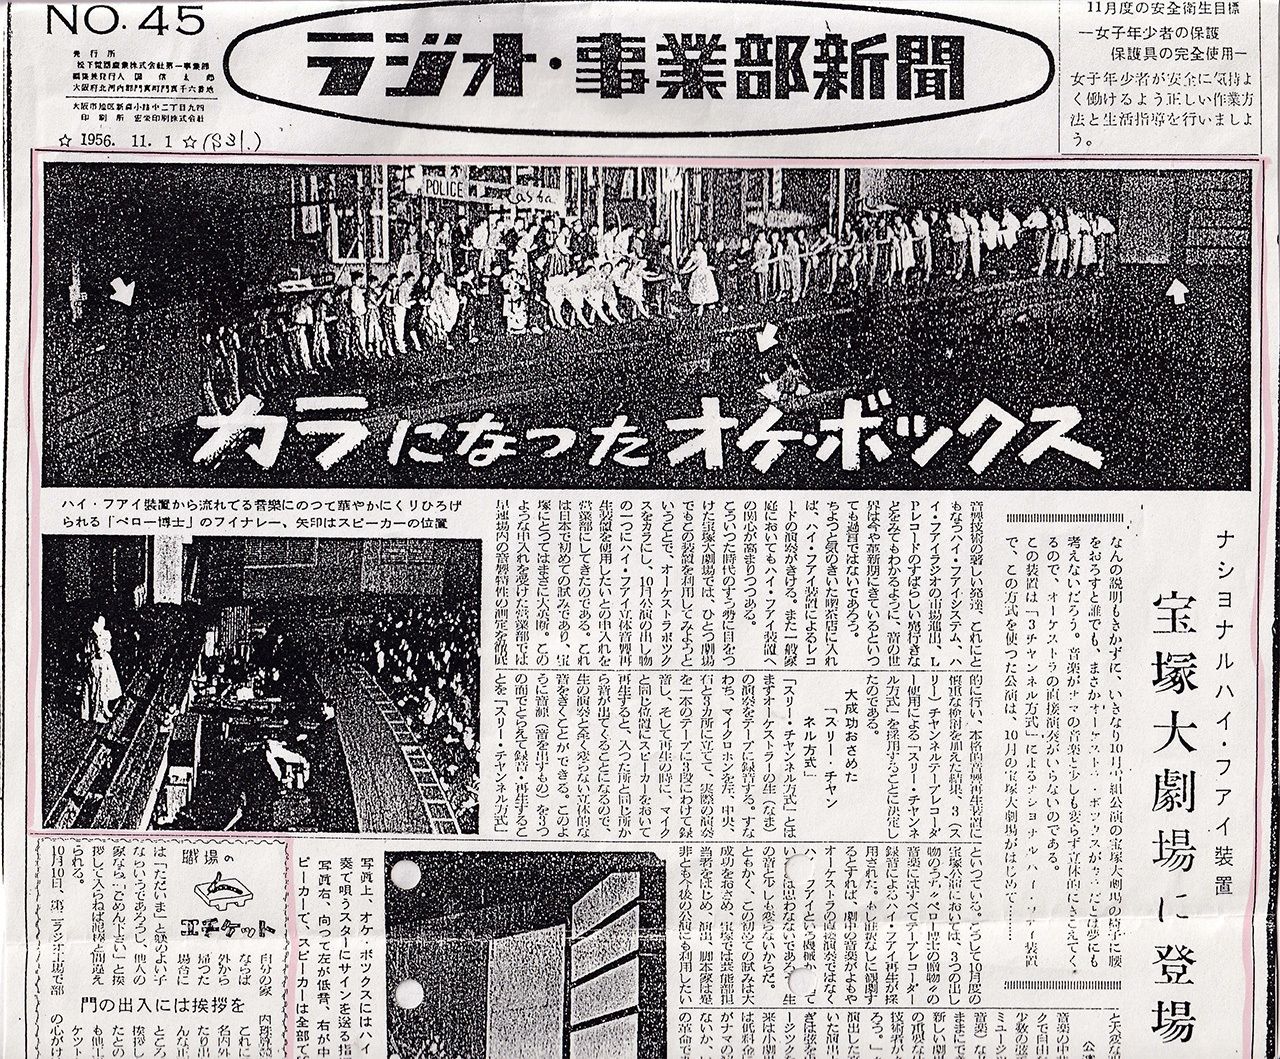 تقرير عن استخدام فرقة تاكارازوكا ريفيو لمعدات ماتسوشيتا لتحل محل الأوركسترا الغائبة من جريدة راجيو جيغيوبو شيمبون بتاريخ 1 نوفمبر/ تشرين الثاني عام 1956. (الصورة من مائيكاوا يوئيتشيرو)